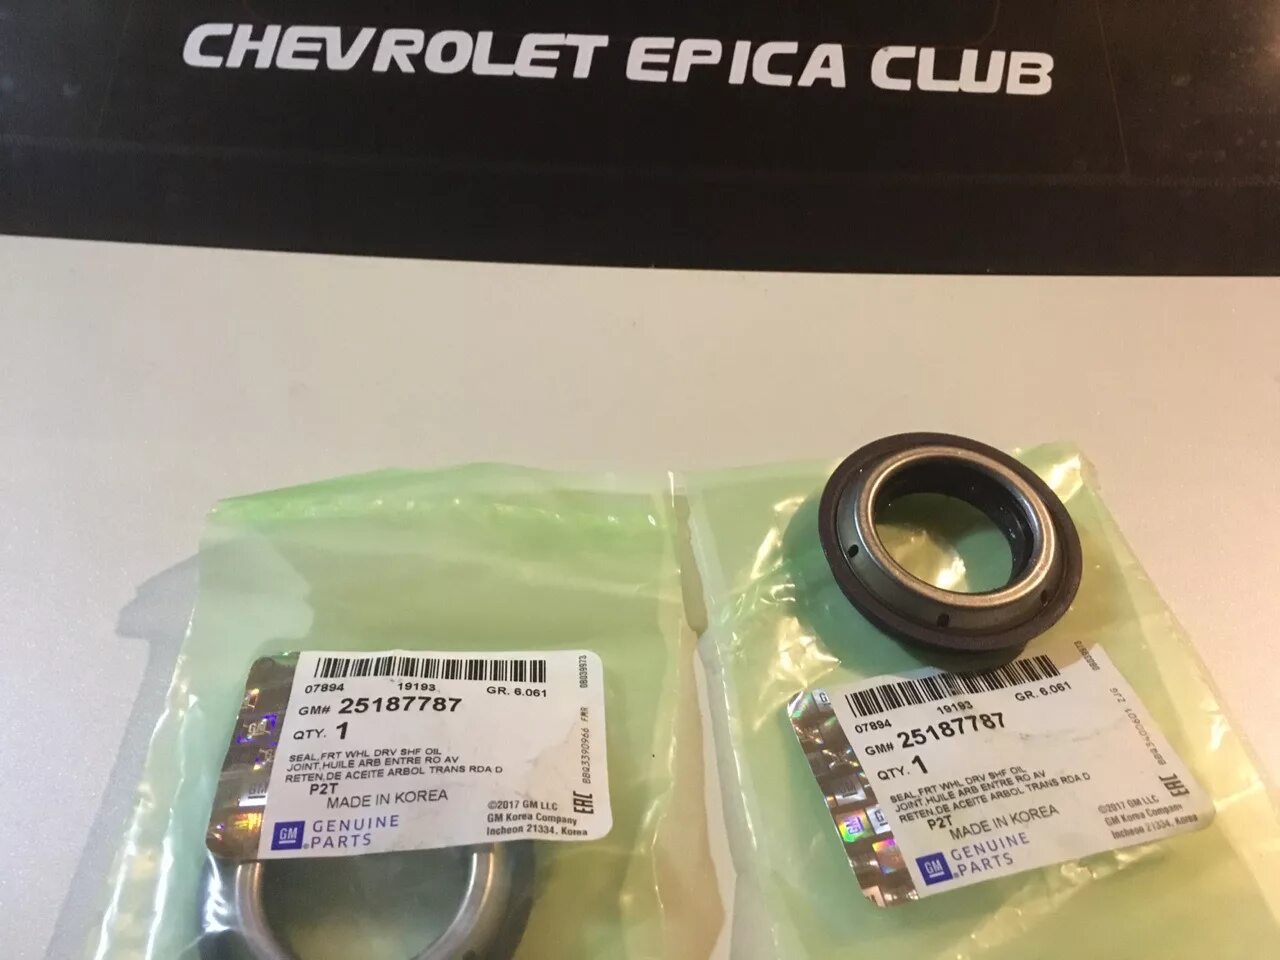 Сальник привода АКПП Epica 2.5. Chevrolet Epica 2.0 МКПП сальник привода левый. Сальник привода АКПП Chevrolet. Сальник привода левый Шевроле Эпика 2.0 АКПП. Сальник привода левый купить